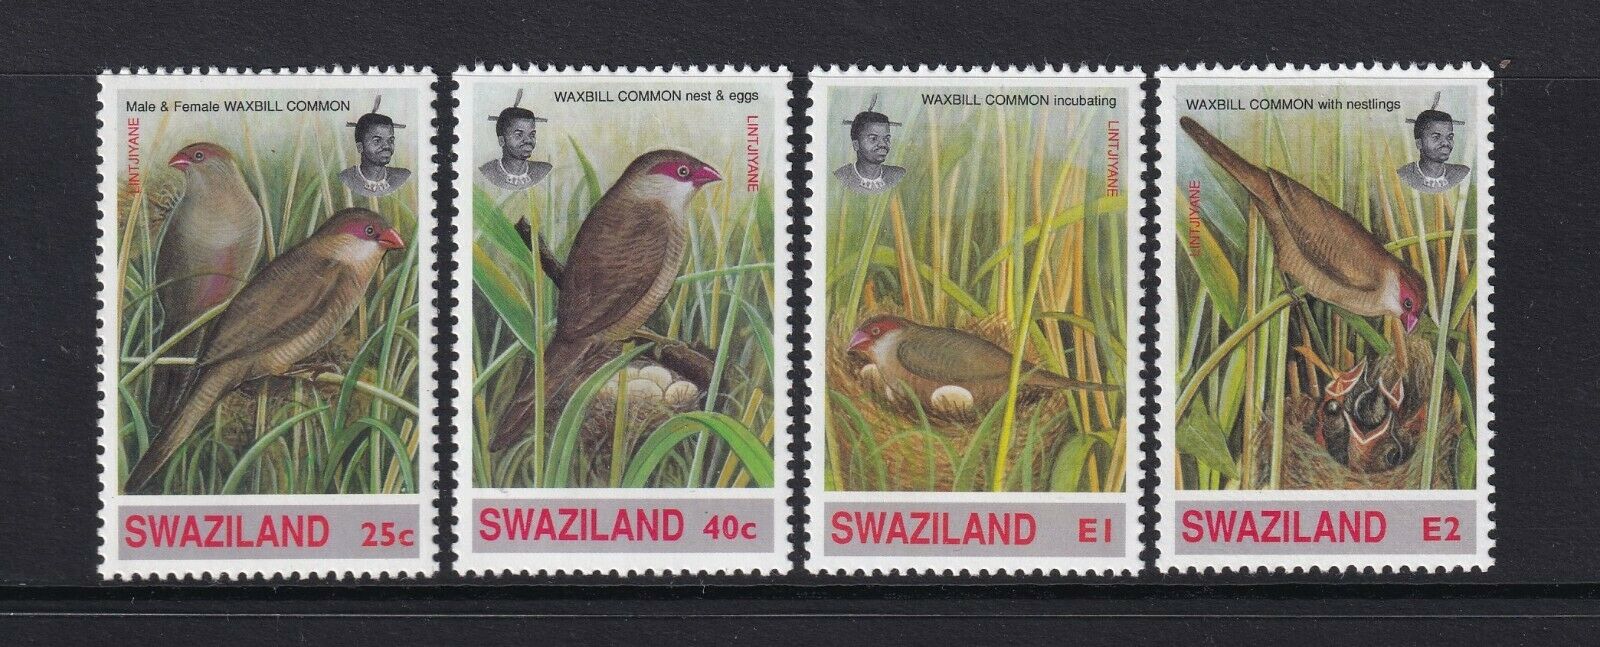 Swaziland - 1993, Common Waxbill, Birds Set - Mnh - Sg 630/3